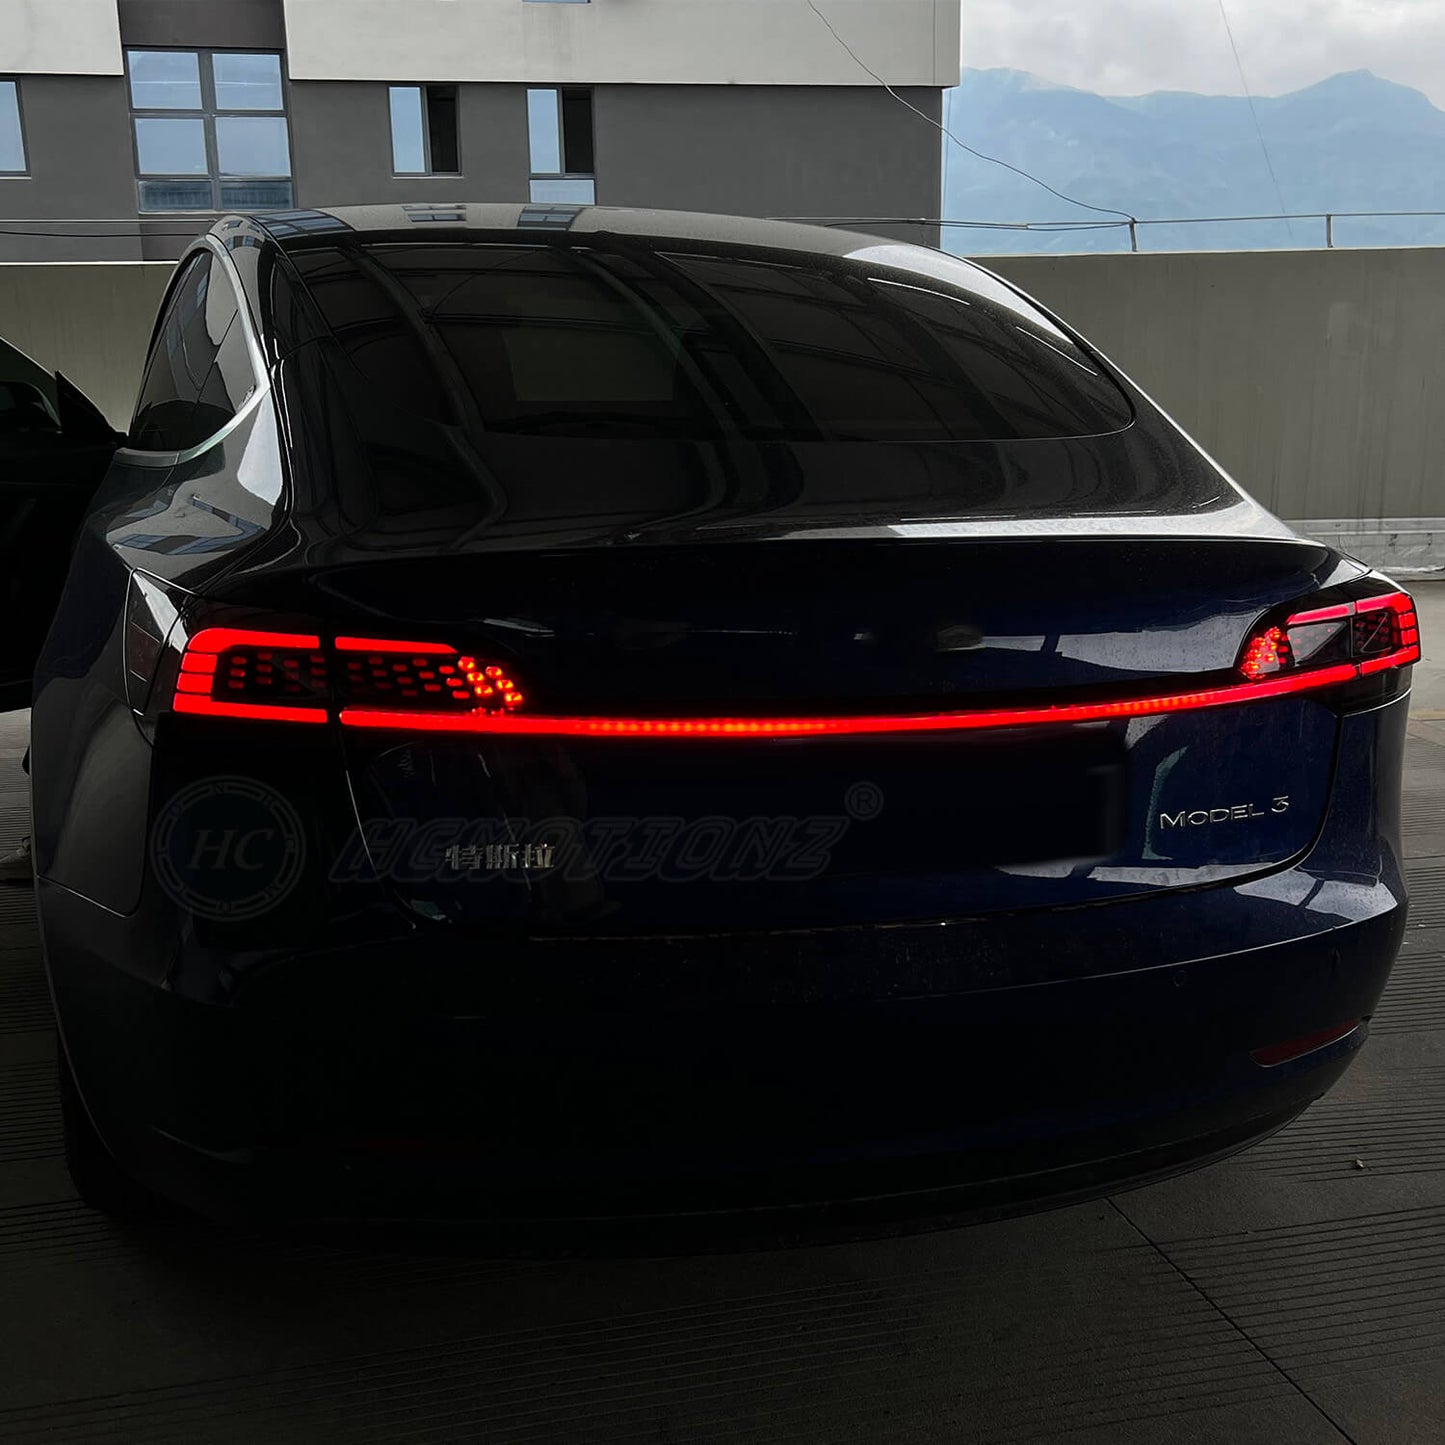 HCMOTION LED Tail Lights For Tesla Model 3 Model Y